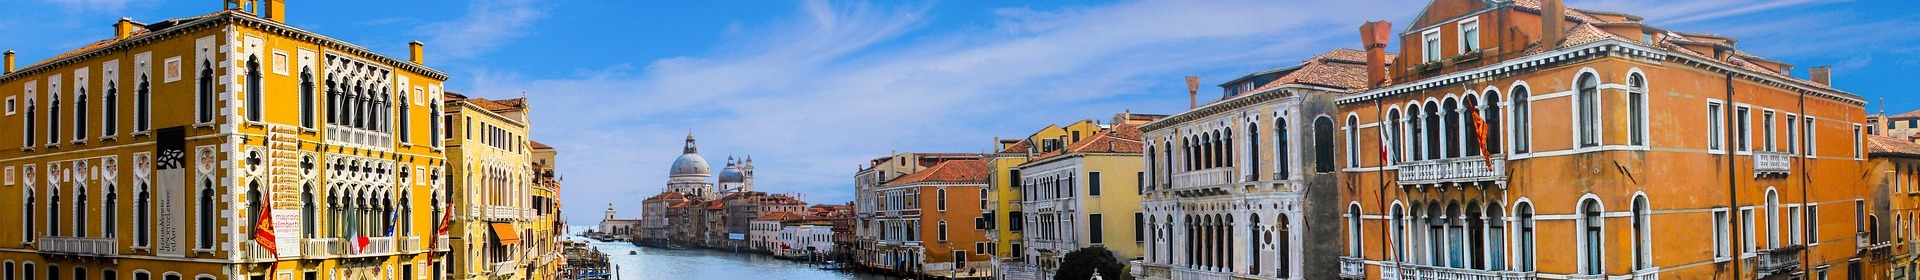 Хотели в Венеция, Италия